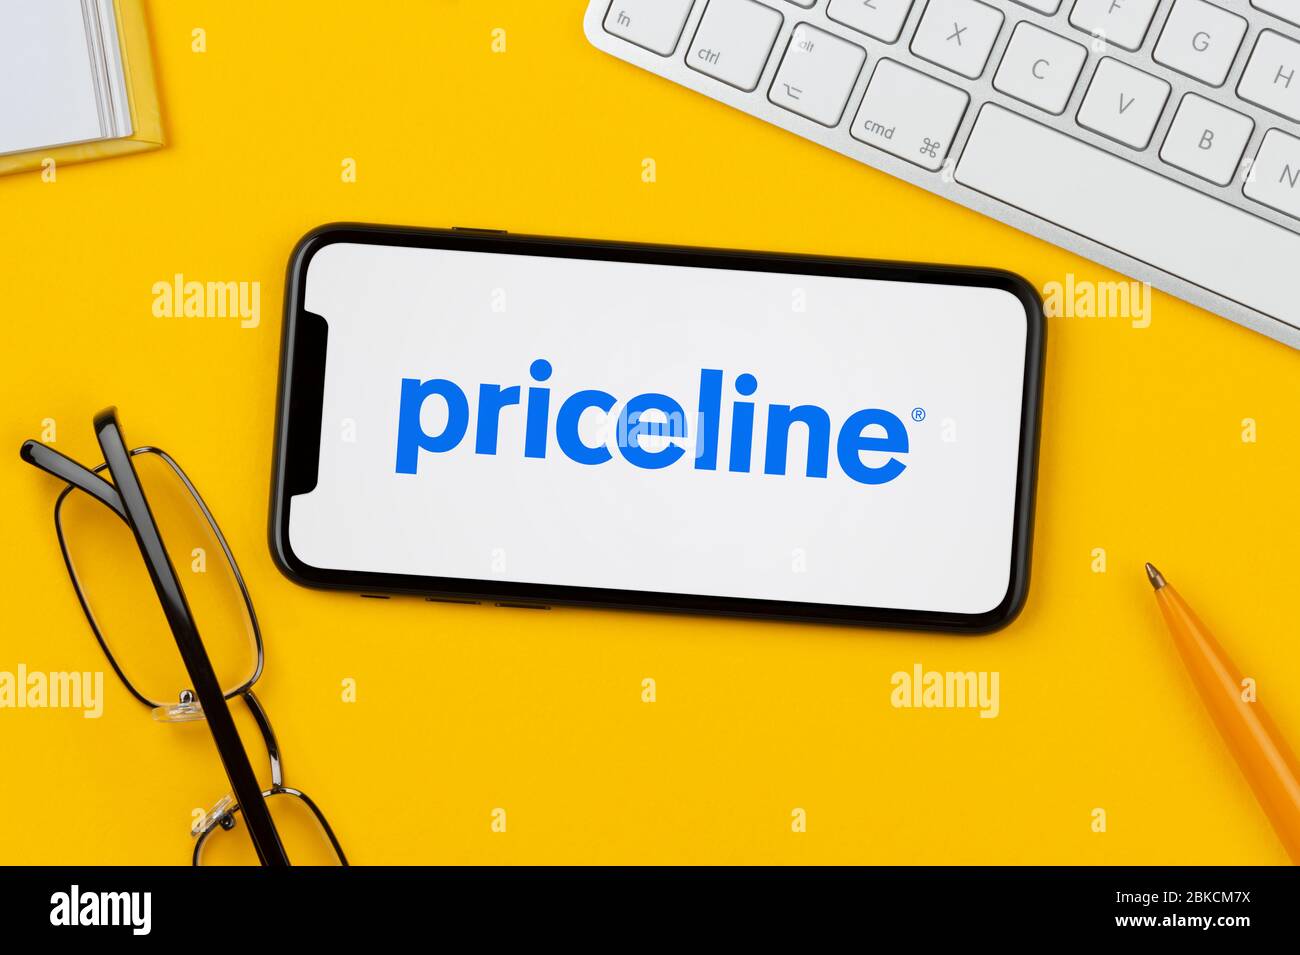 Ein Smartphone mit dem Priceline-Logo liegt auf einem gelben Hintergrund zusammen mit Tastatur, Brille, Stift und Buch (nur für redaktionelle Verwendung). Stockfoto